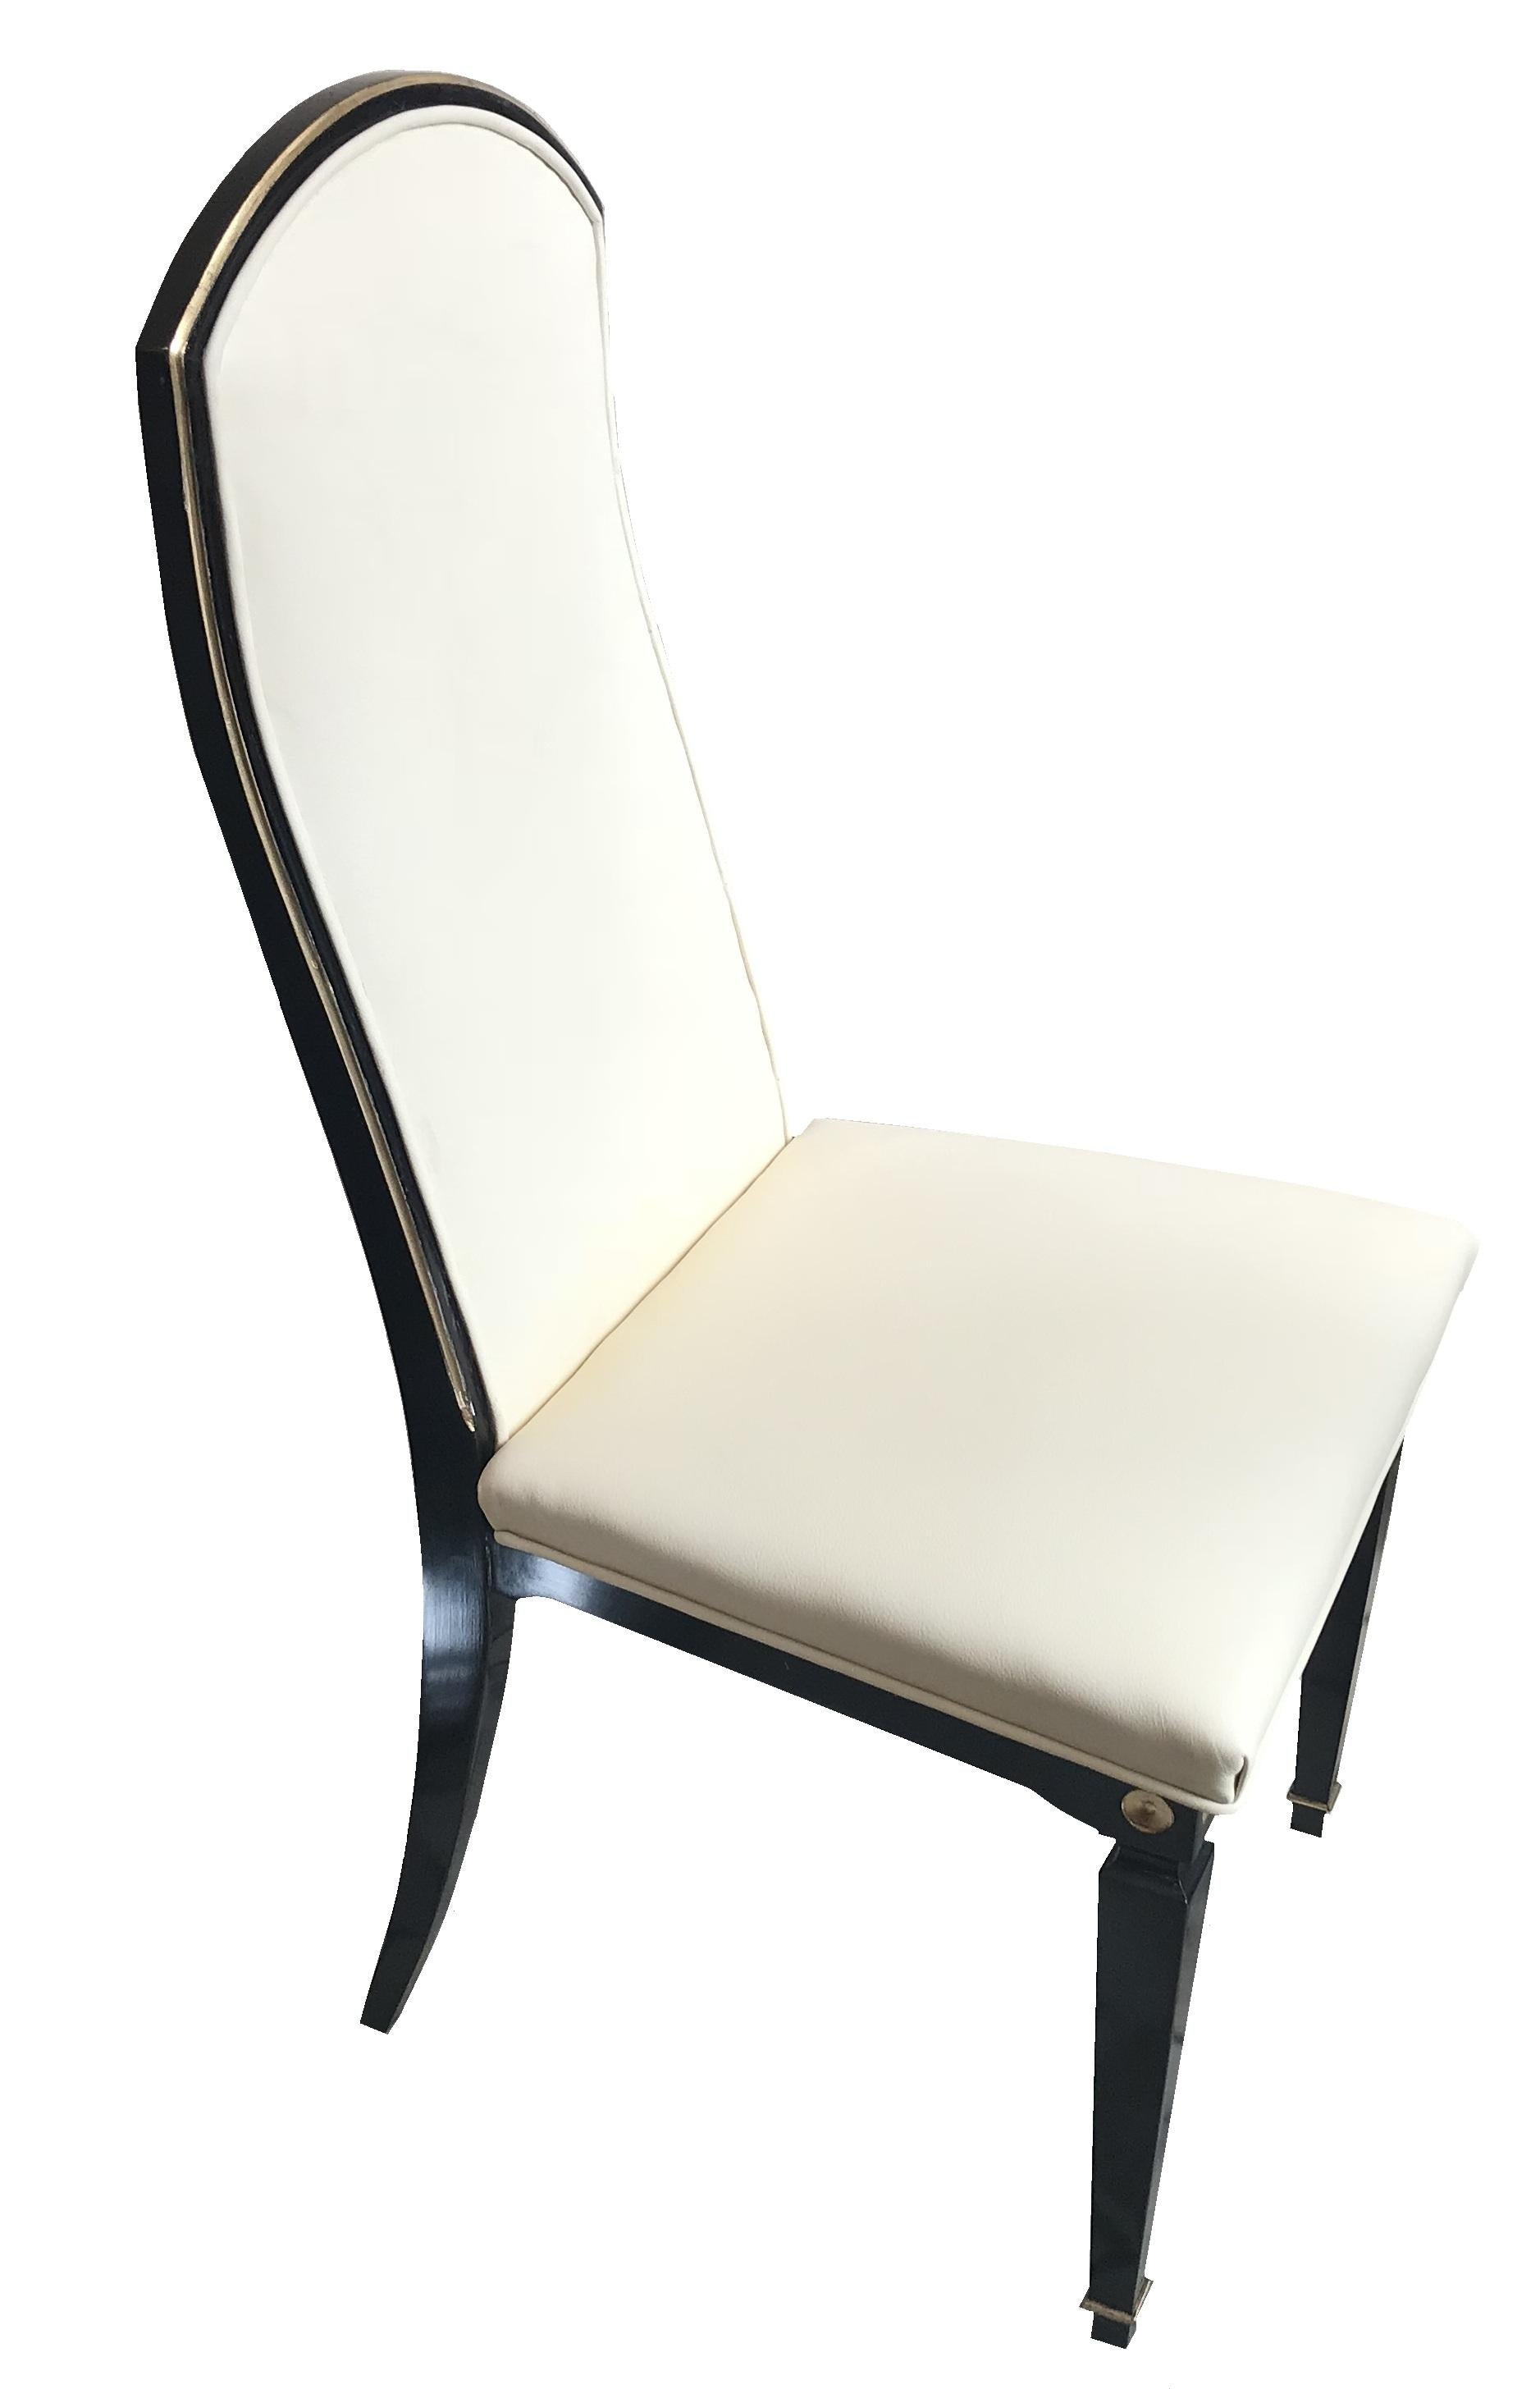 Luxe 12 chaises Art Déco en cuir et bois.

Année 1930
Pays : Français
Matériaux : bois et cuir
Finition : laque polyuréthane
12 chaises élégantes et sophistiquées.
Vous voulez vivre dans l'âge d'or, ce sont les chaises dont votre projet a